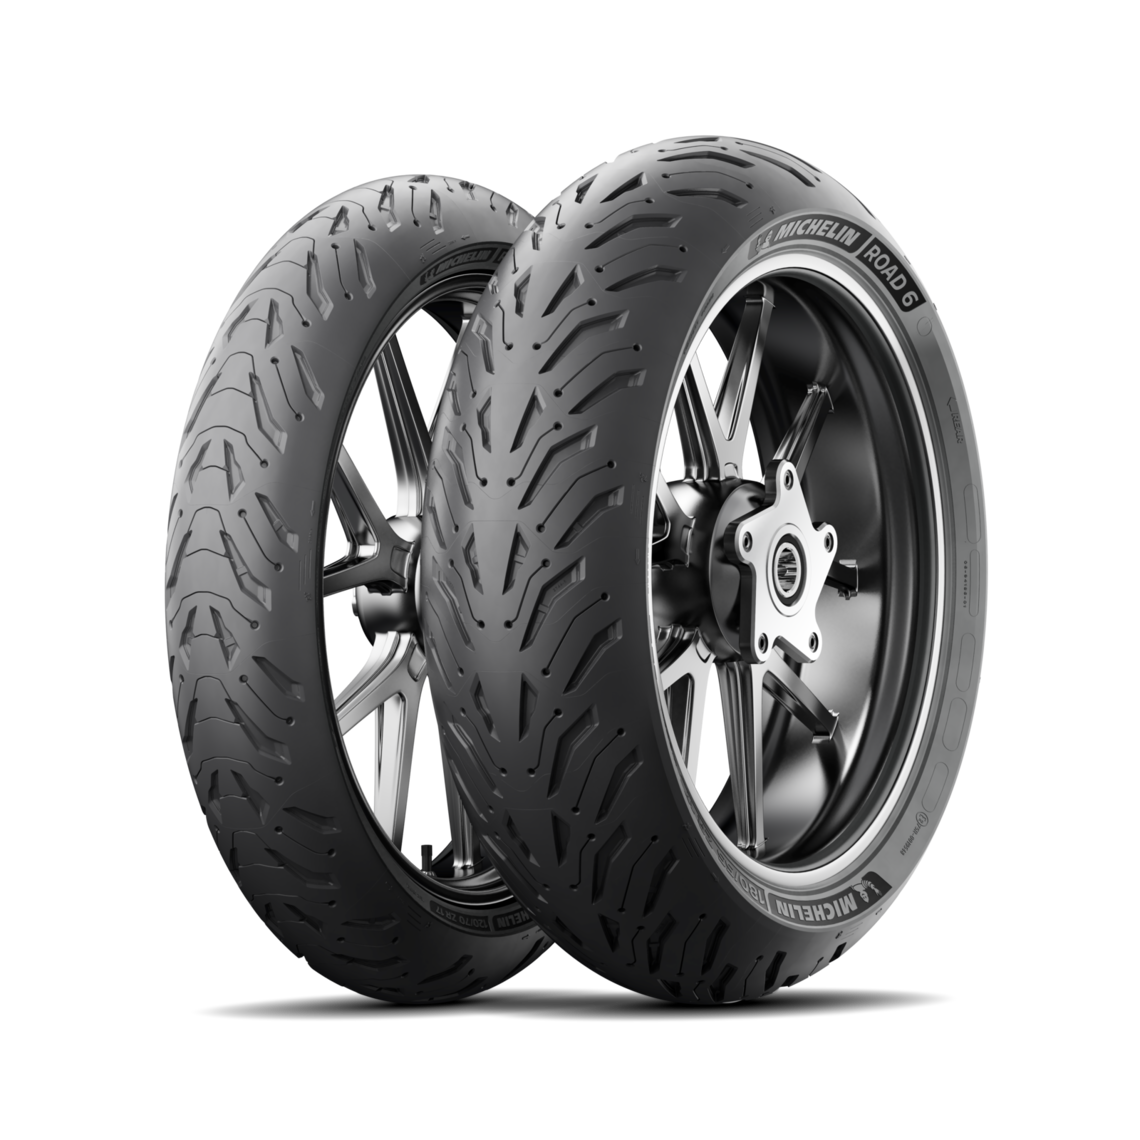 Gomme Nuove Michelin 180/55 ZR17 73W ROAD 6 pneumatici nuovi Estivo